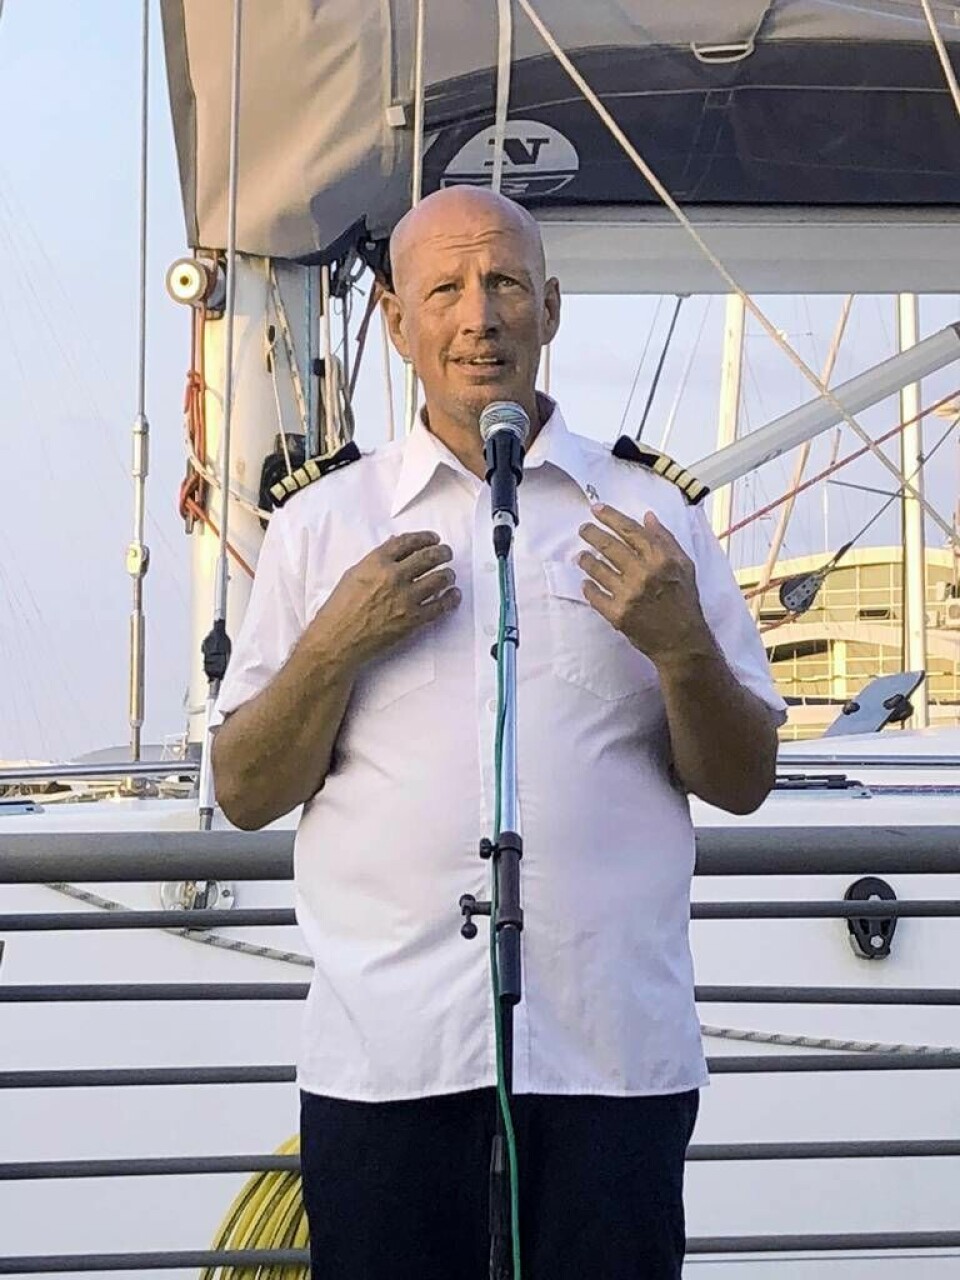 Elidas skeppare Stefan Abrahamsson höll tal vid ankomsten i Israel. Foto: Lukas Berggren